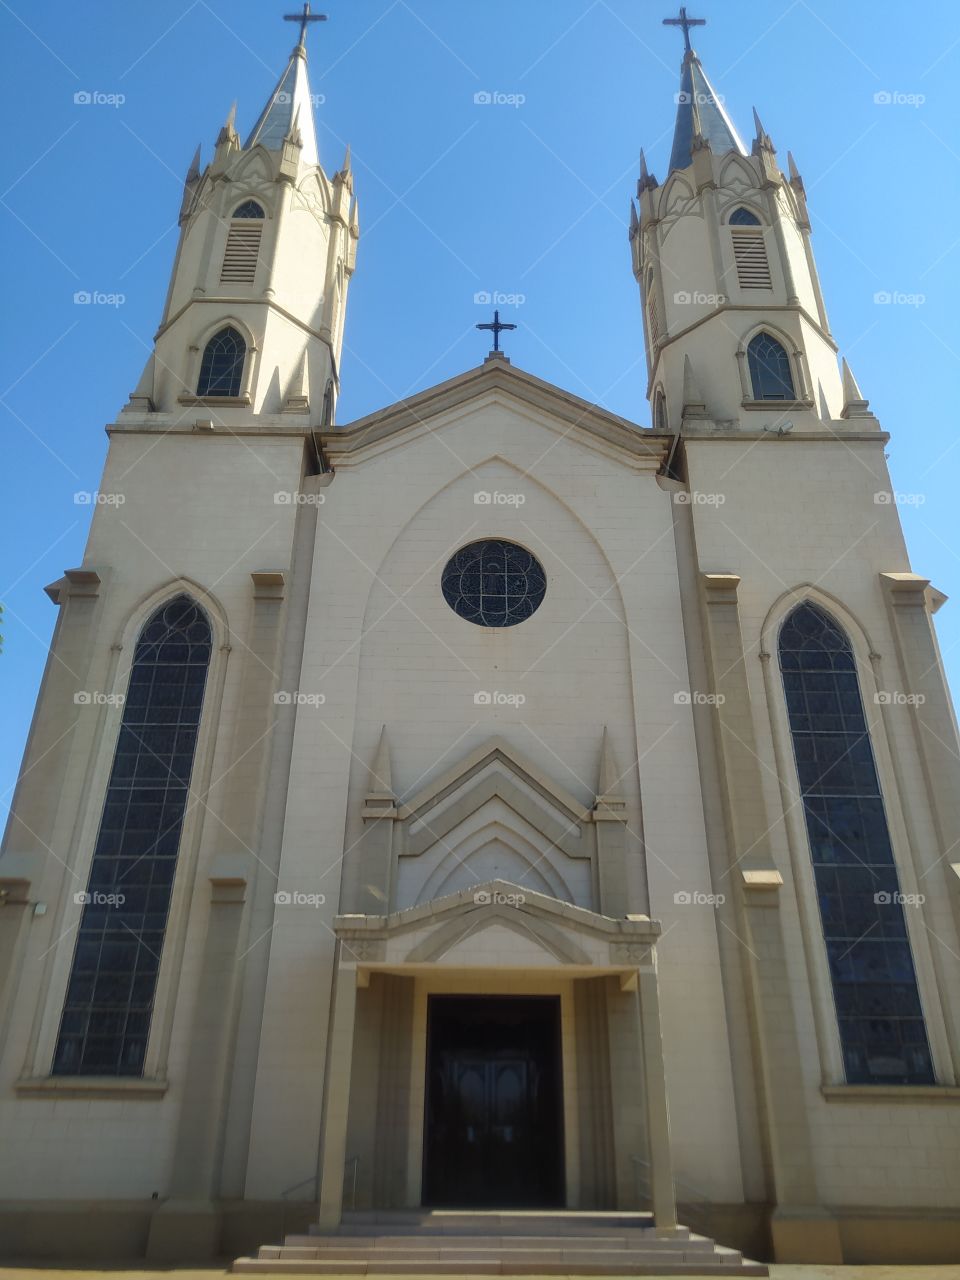 igreja católica no centro de cidade em interior de São Paulo com estruturas góticas.